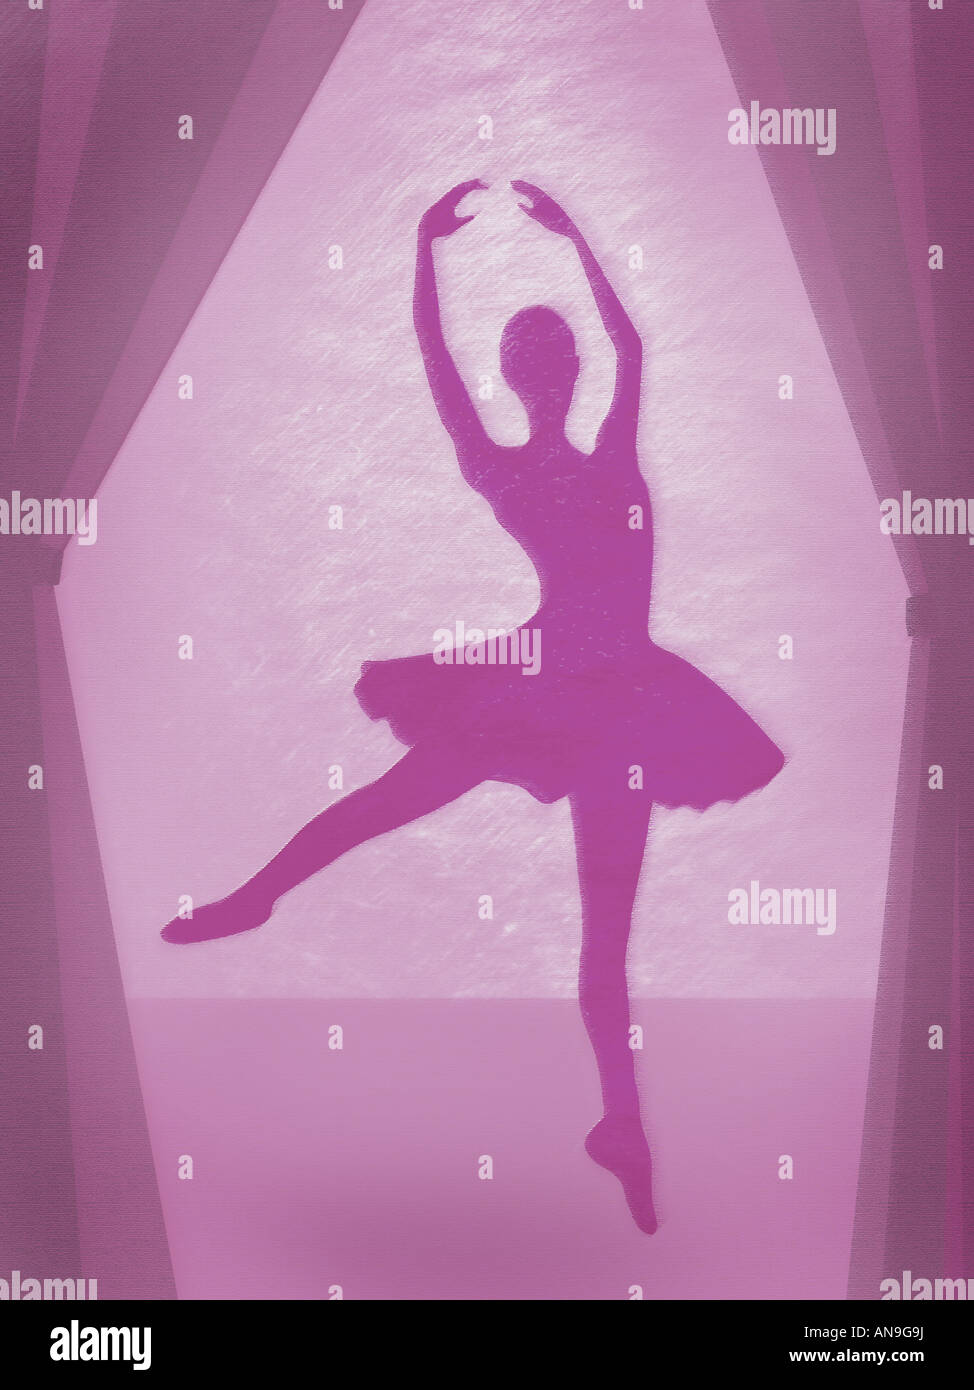 Ballerina on stage Stock Photo